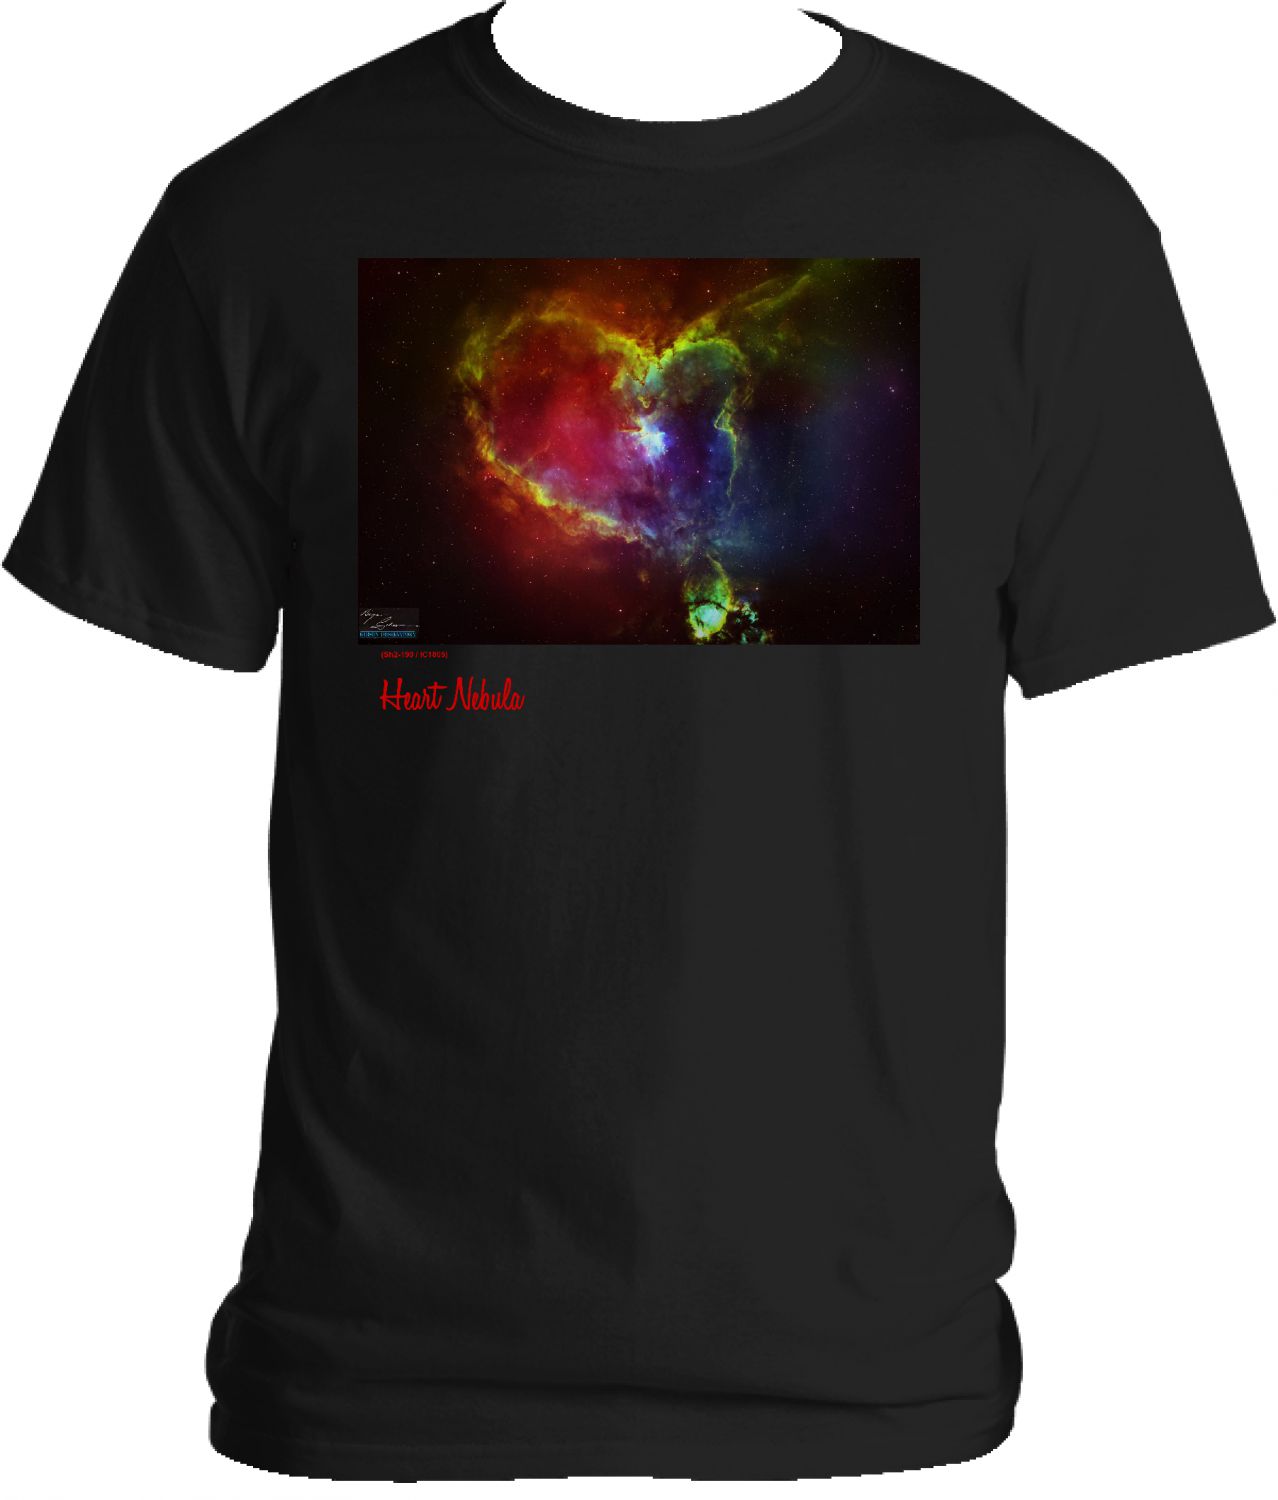 Heart Nebula T-Shirt